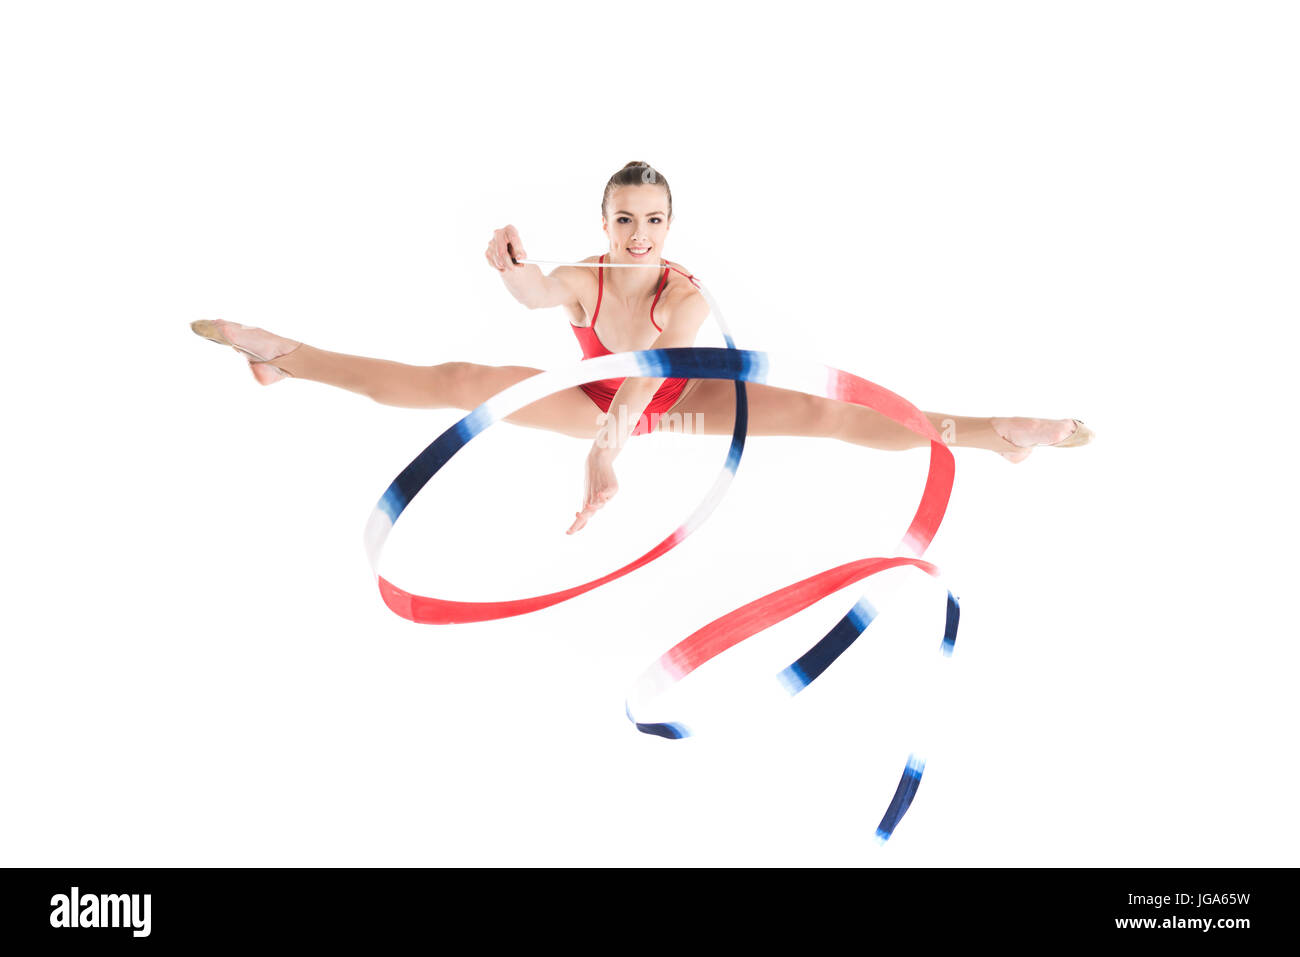 Giovane donna ginnasta ritmica del salto con la corda colorata e guardando la fotocamera Foto Stock